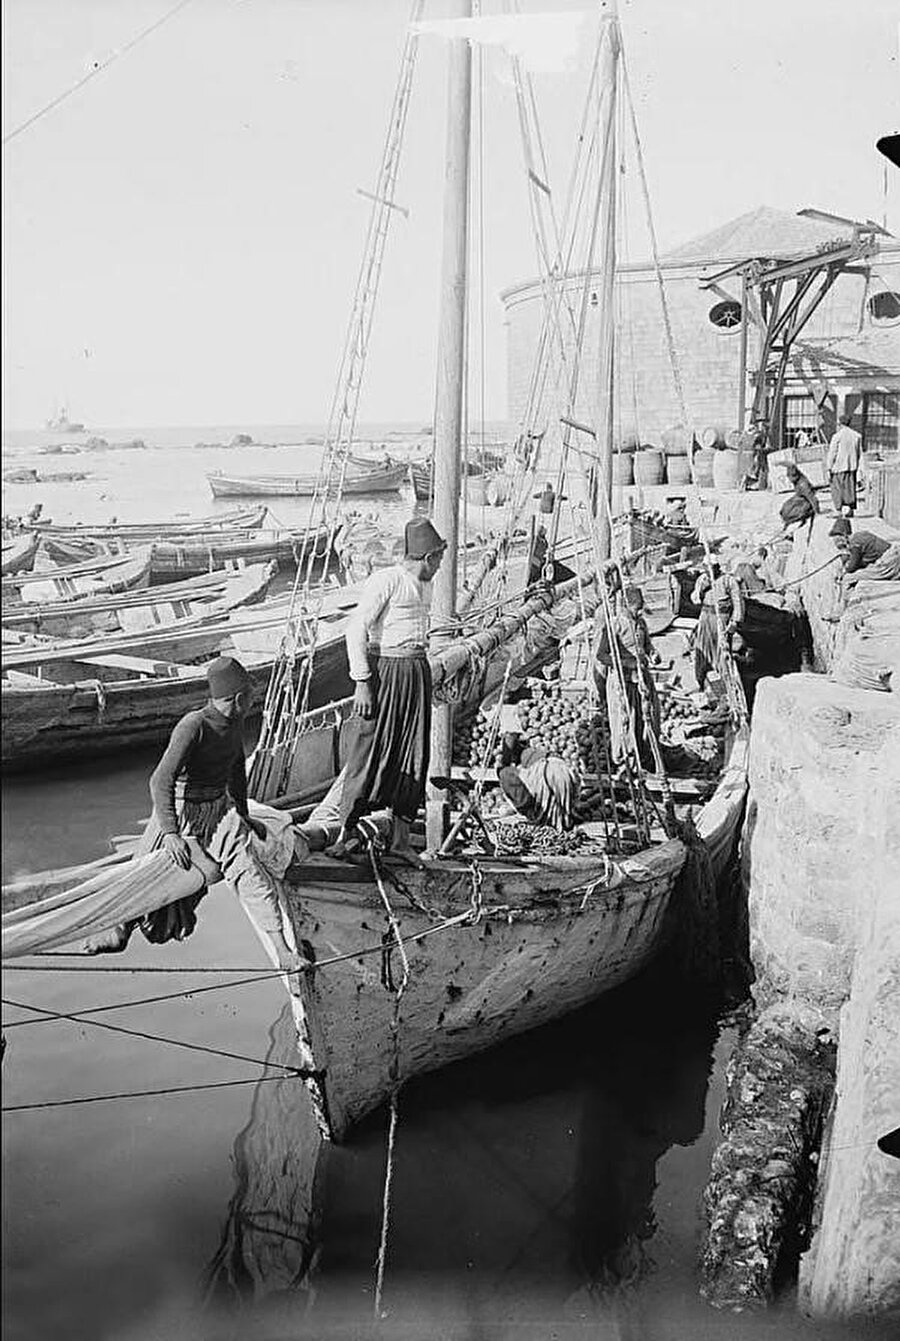 Yafa'da portakal ticareti yapan bir gemi, 19. yüzyılın sonları, 20. yüzyılın başları.